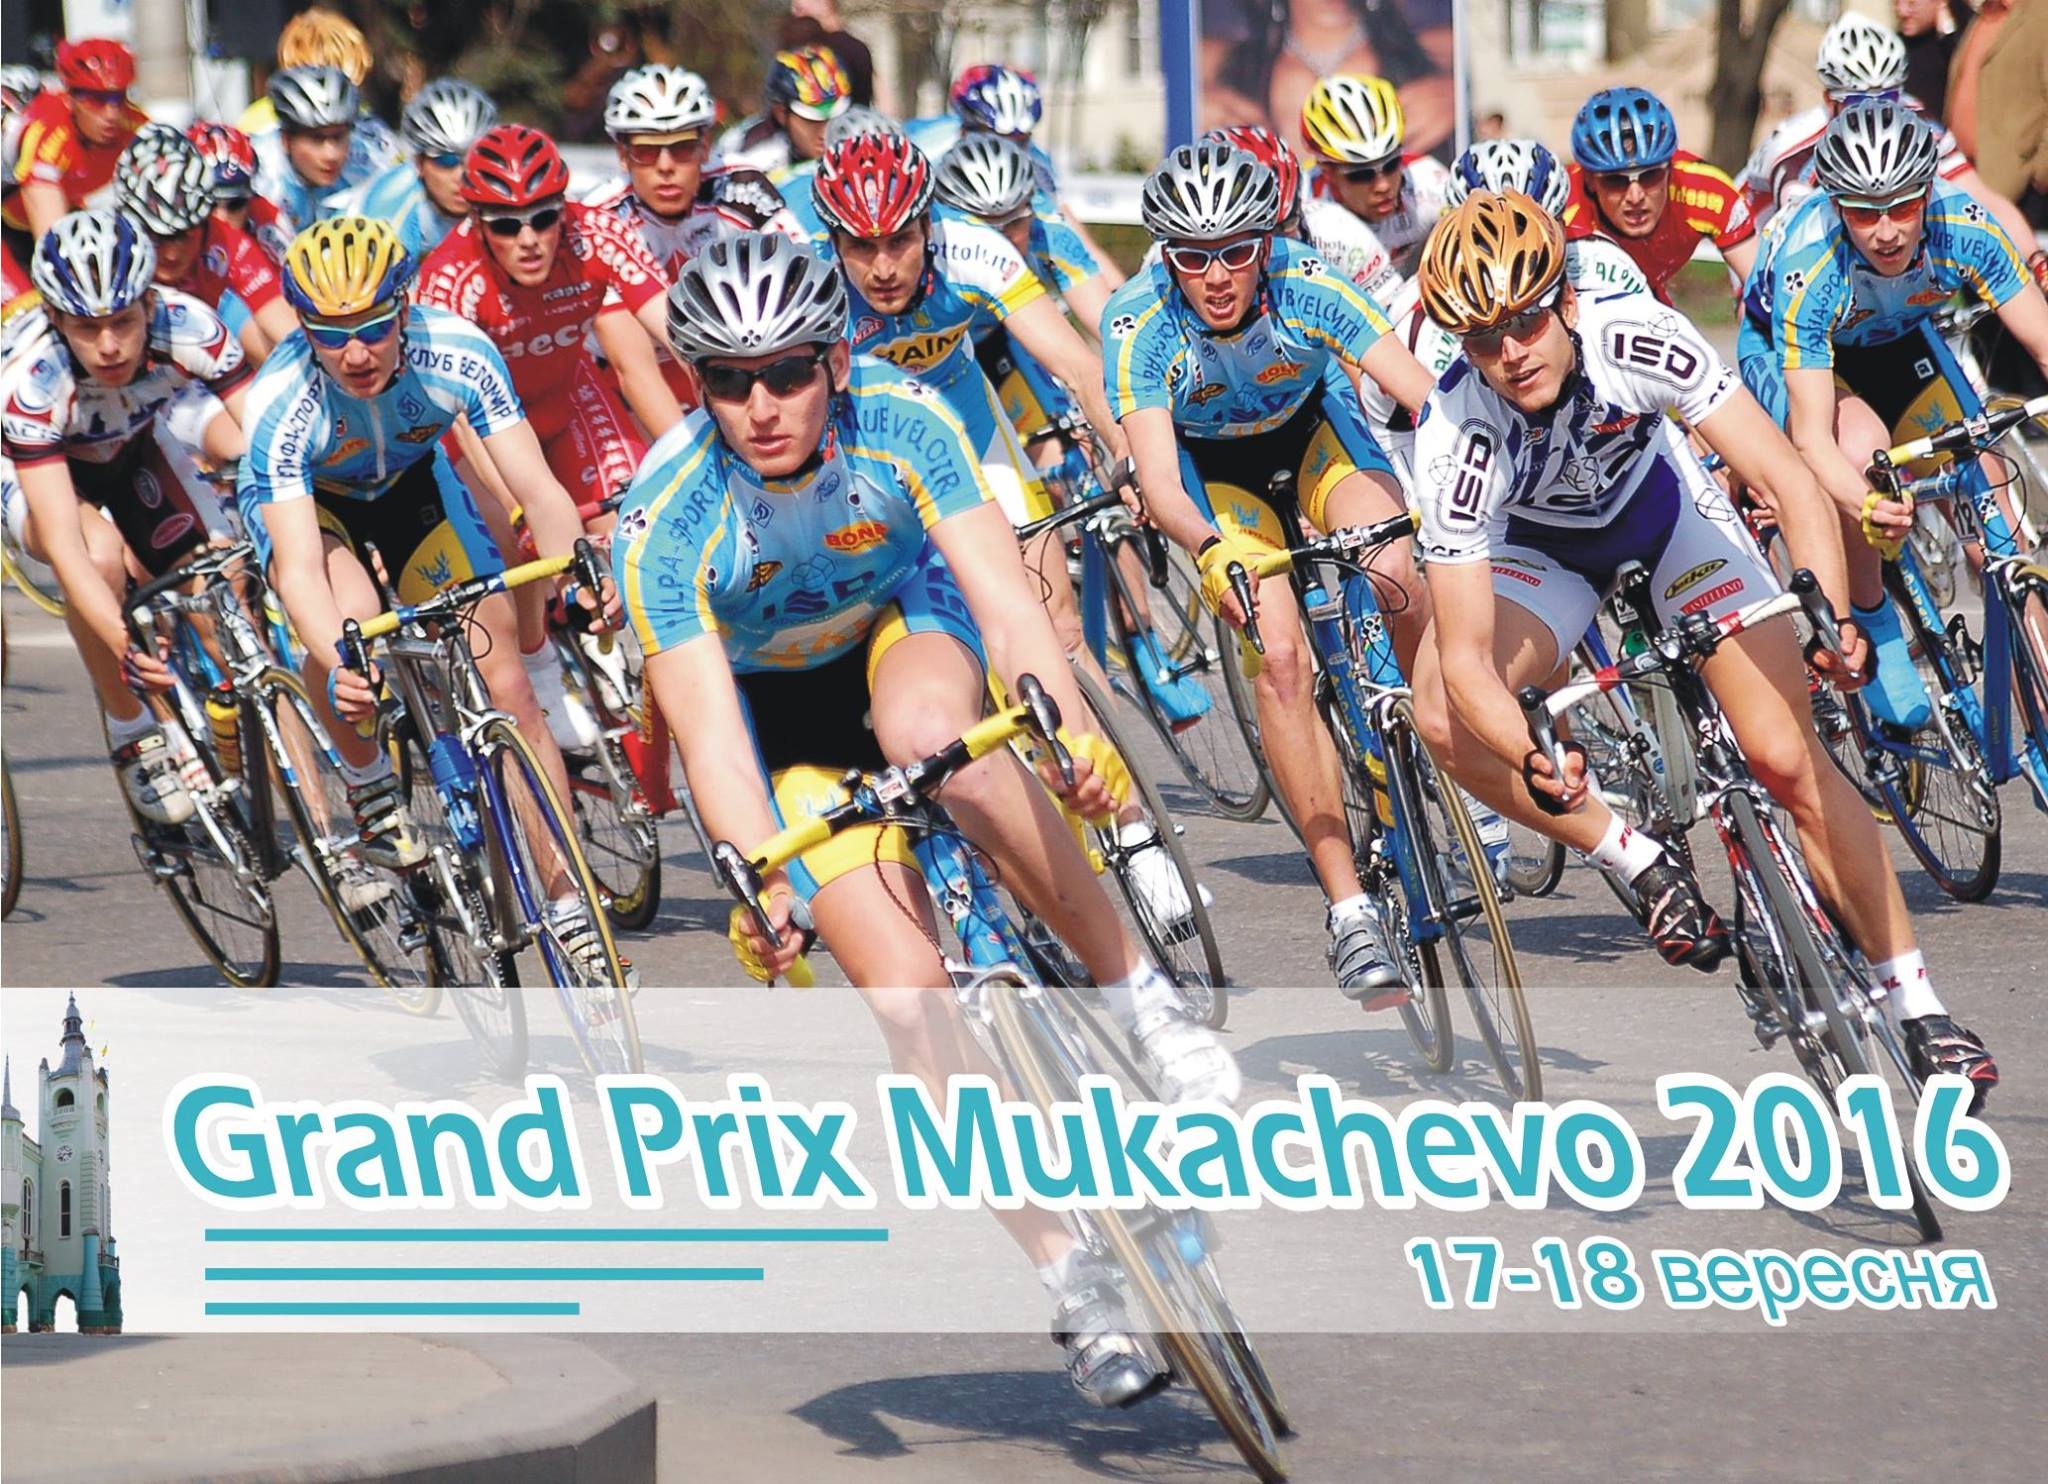 Організатори велозмагань Артем Топчанюк та Денис Соболь анонсували найбільшу велоподію року Закарпаття, що пройде 17-18 вересня 20016 року в Мукачеві.